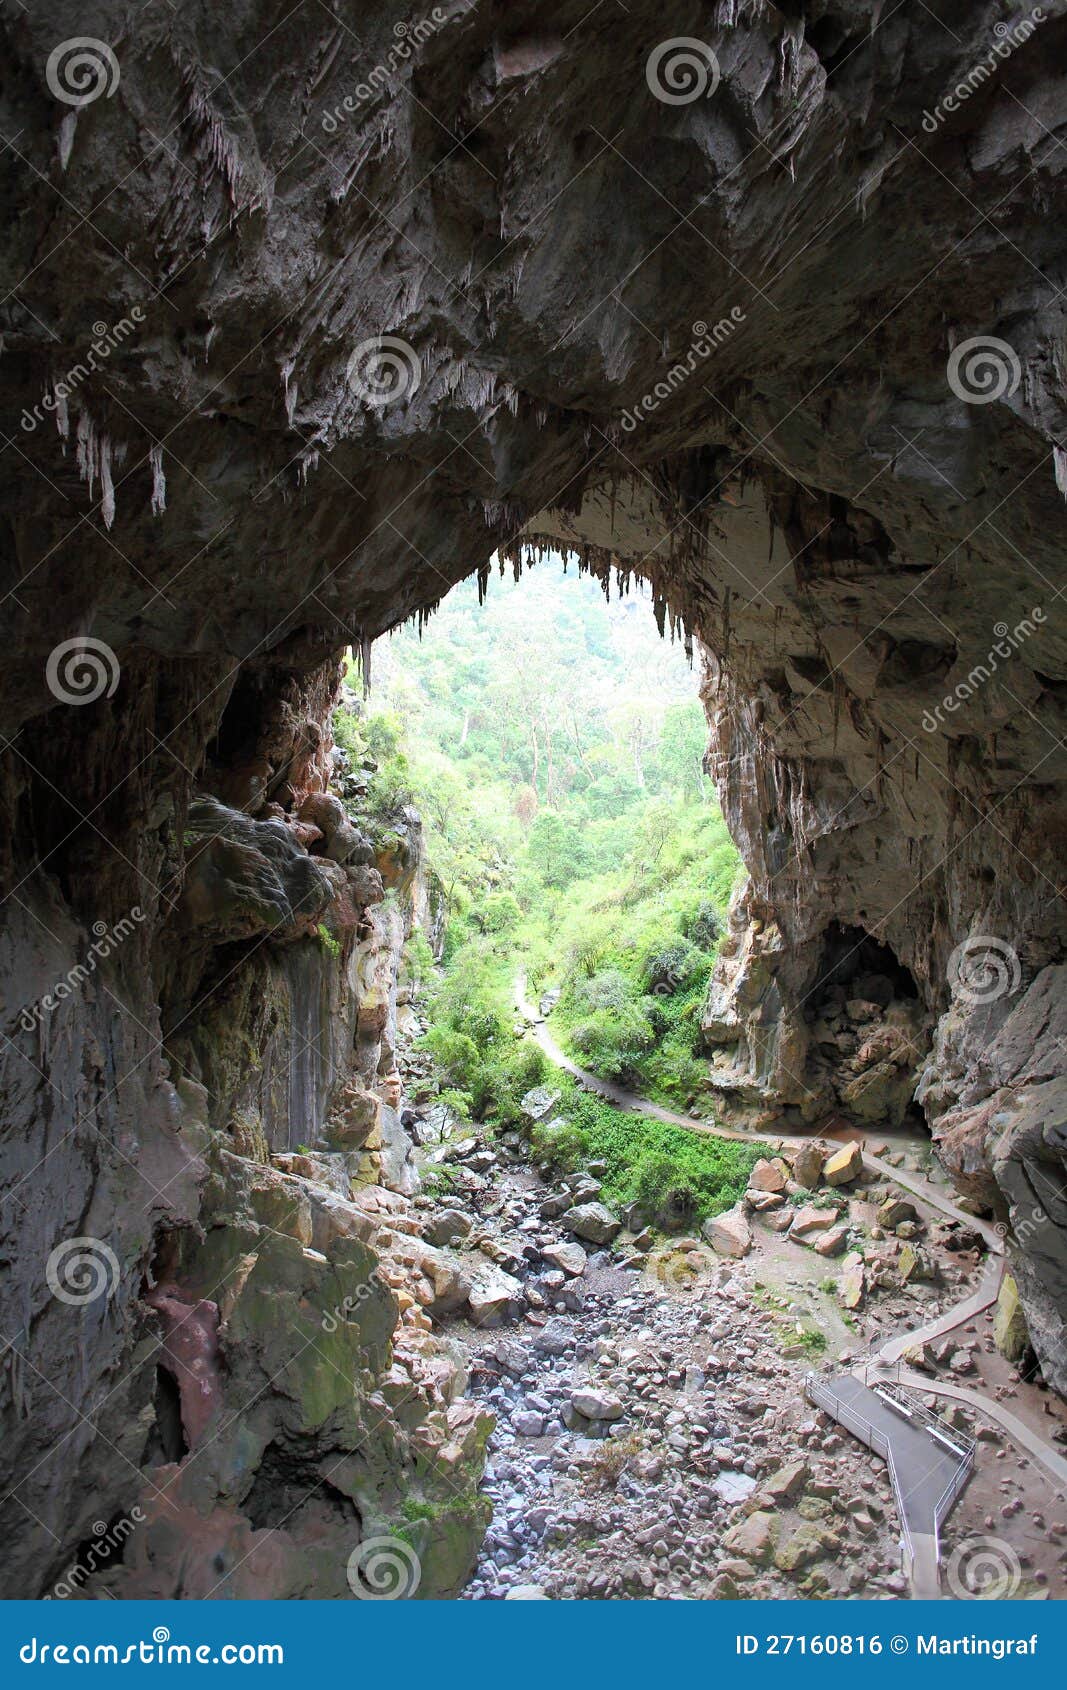 natural archway at jenolan caves